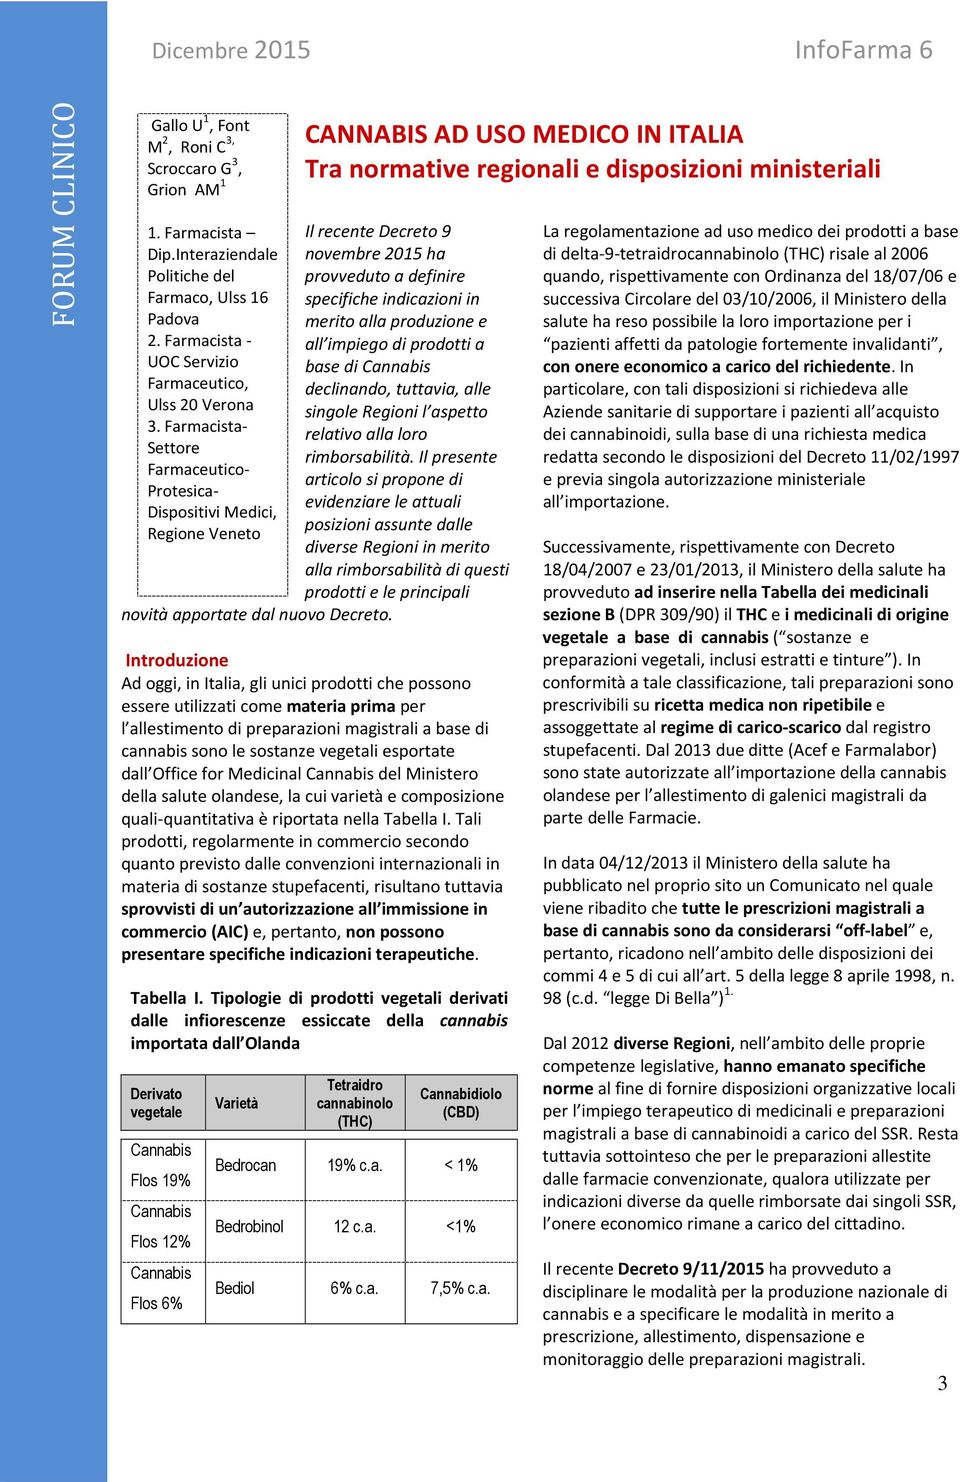 CANNABIS AD USO MEDICO IN ITALIA Tra normative regionali e disposizioni ministeriali Il recente Decreto 9 novembre 2015 ha provveduto a definire specifiche indicazioni in merito alla produzione e all